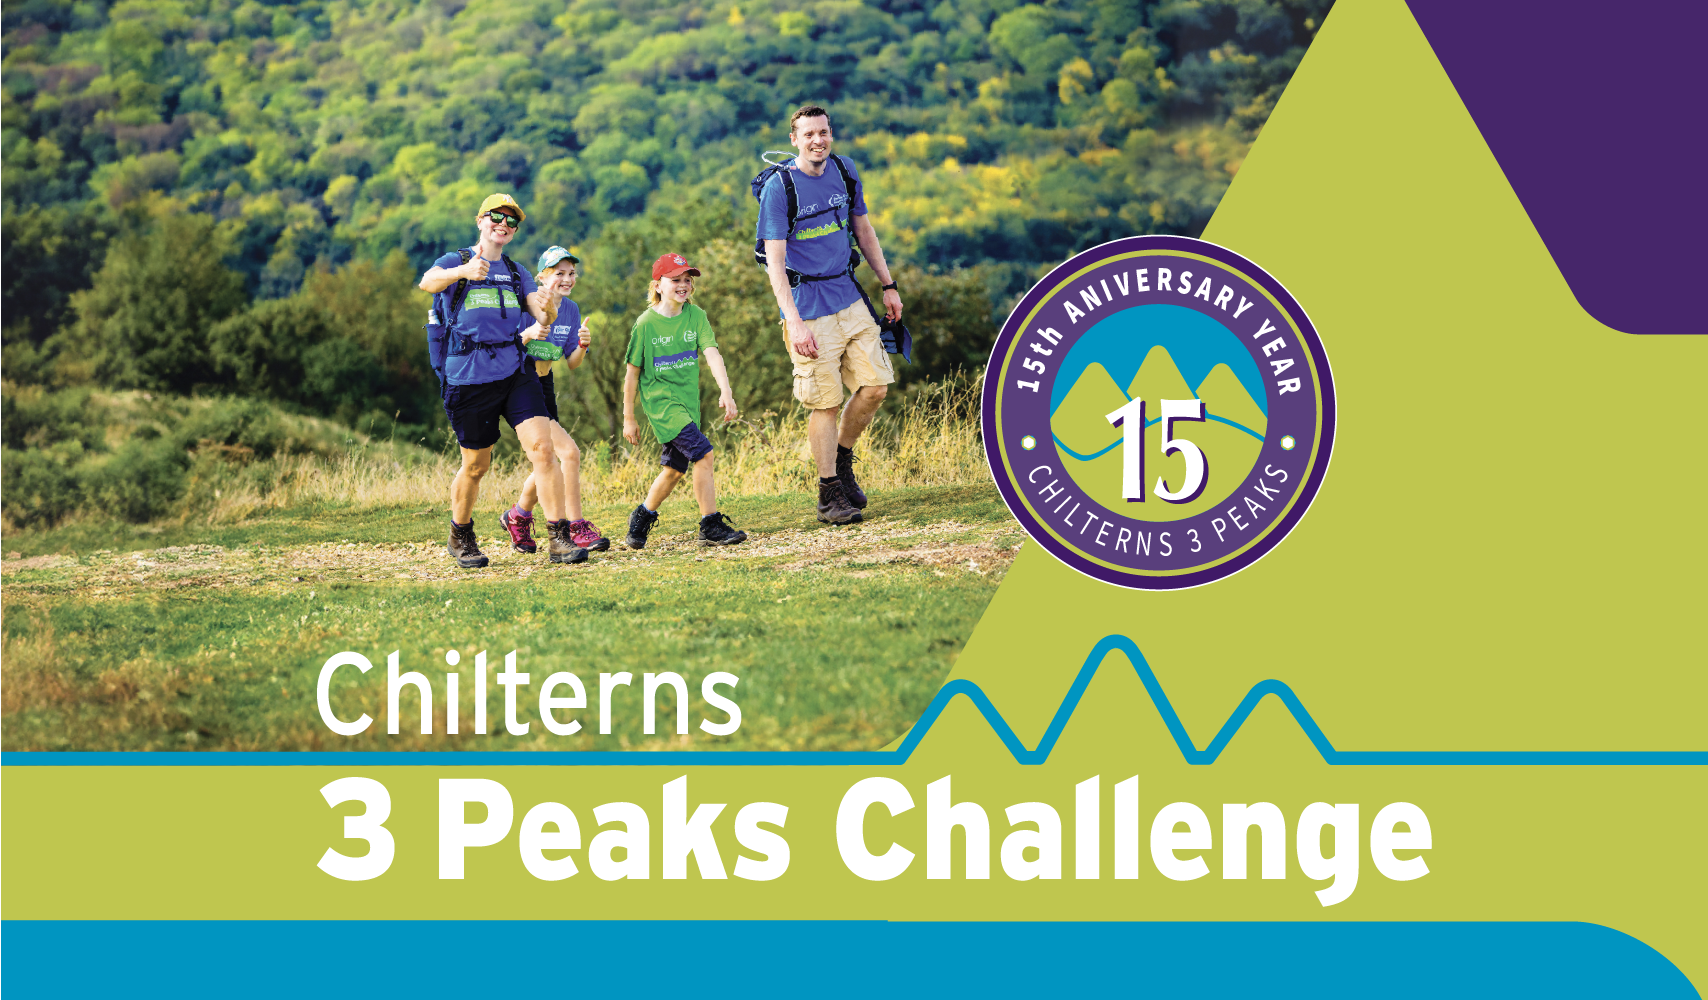 Chilterns 3 Peaks Challenge